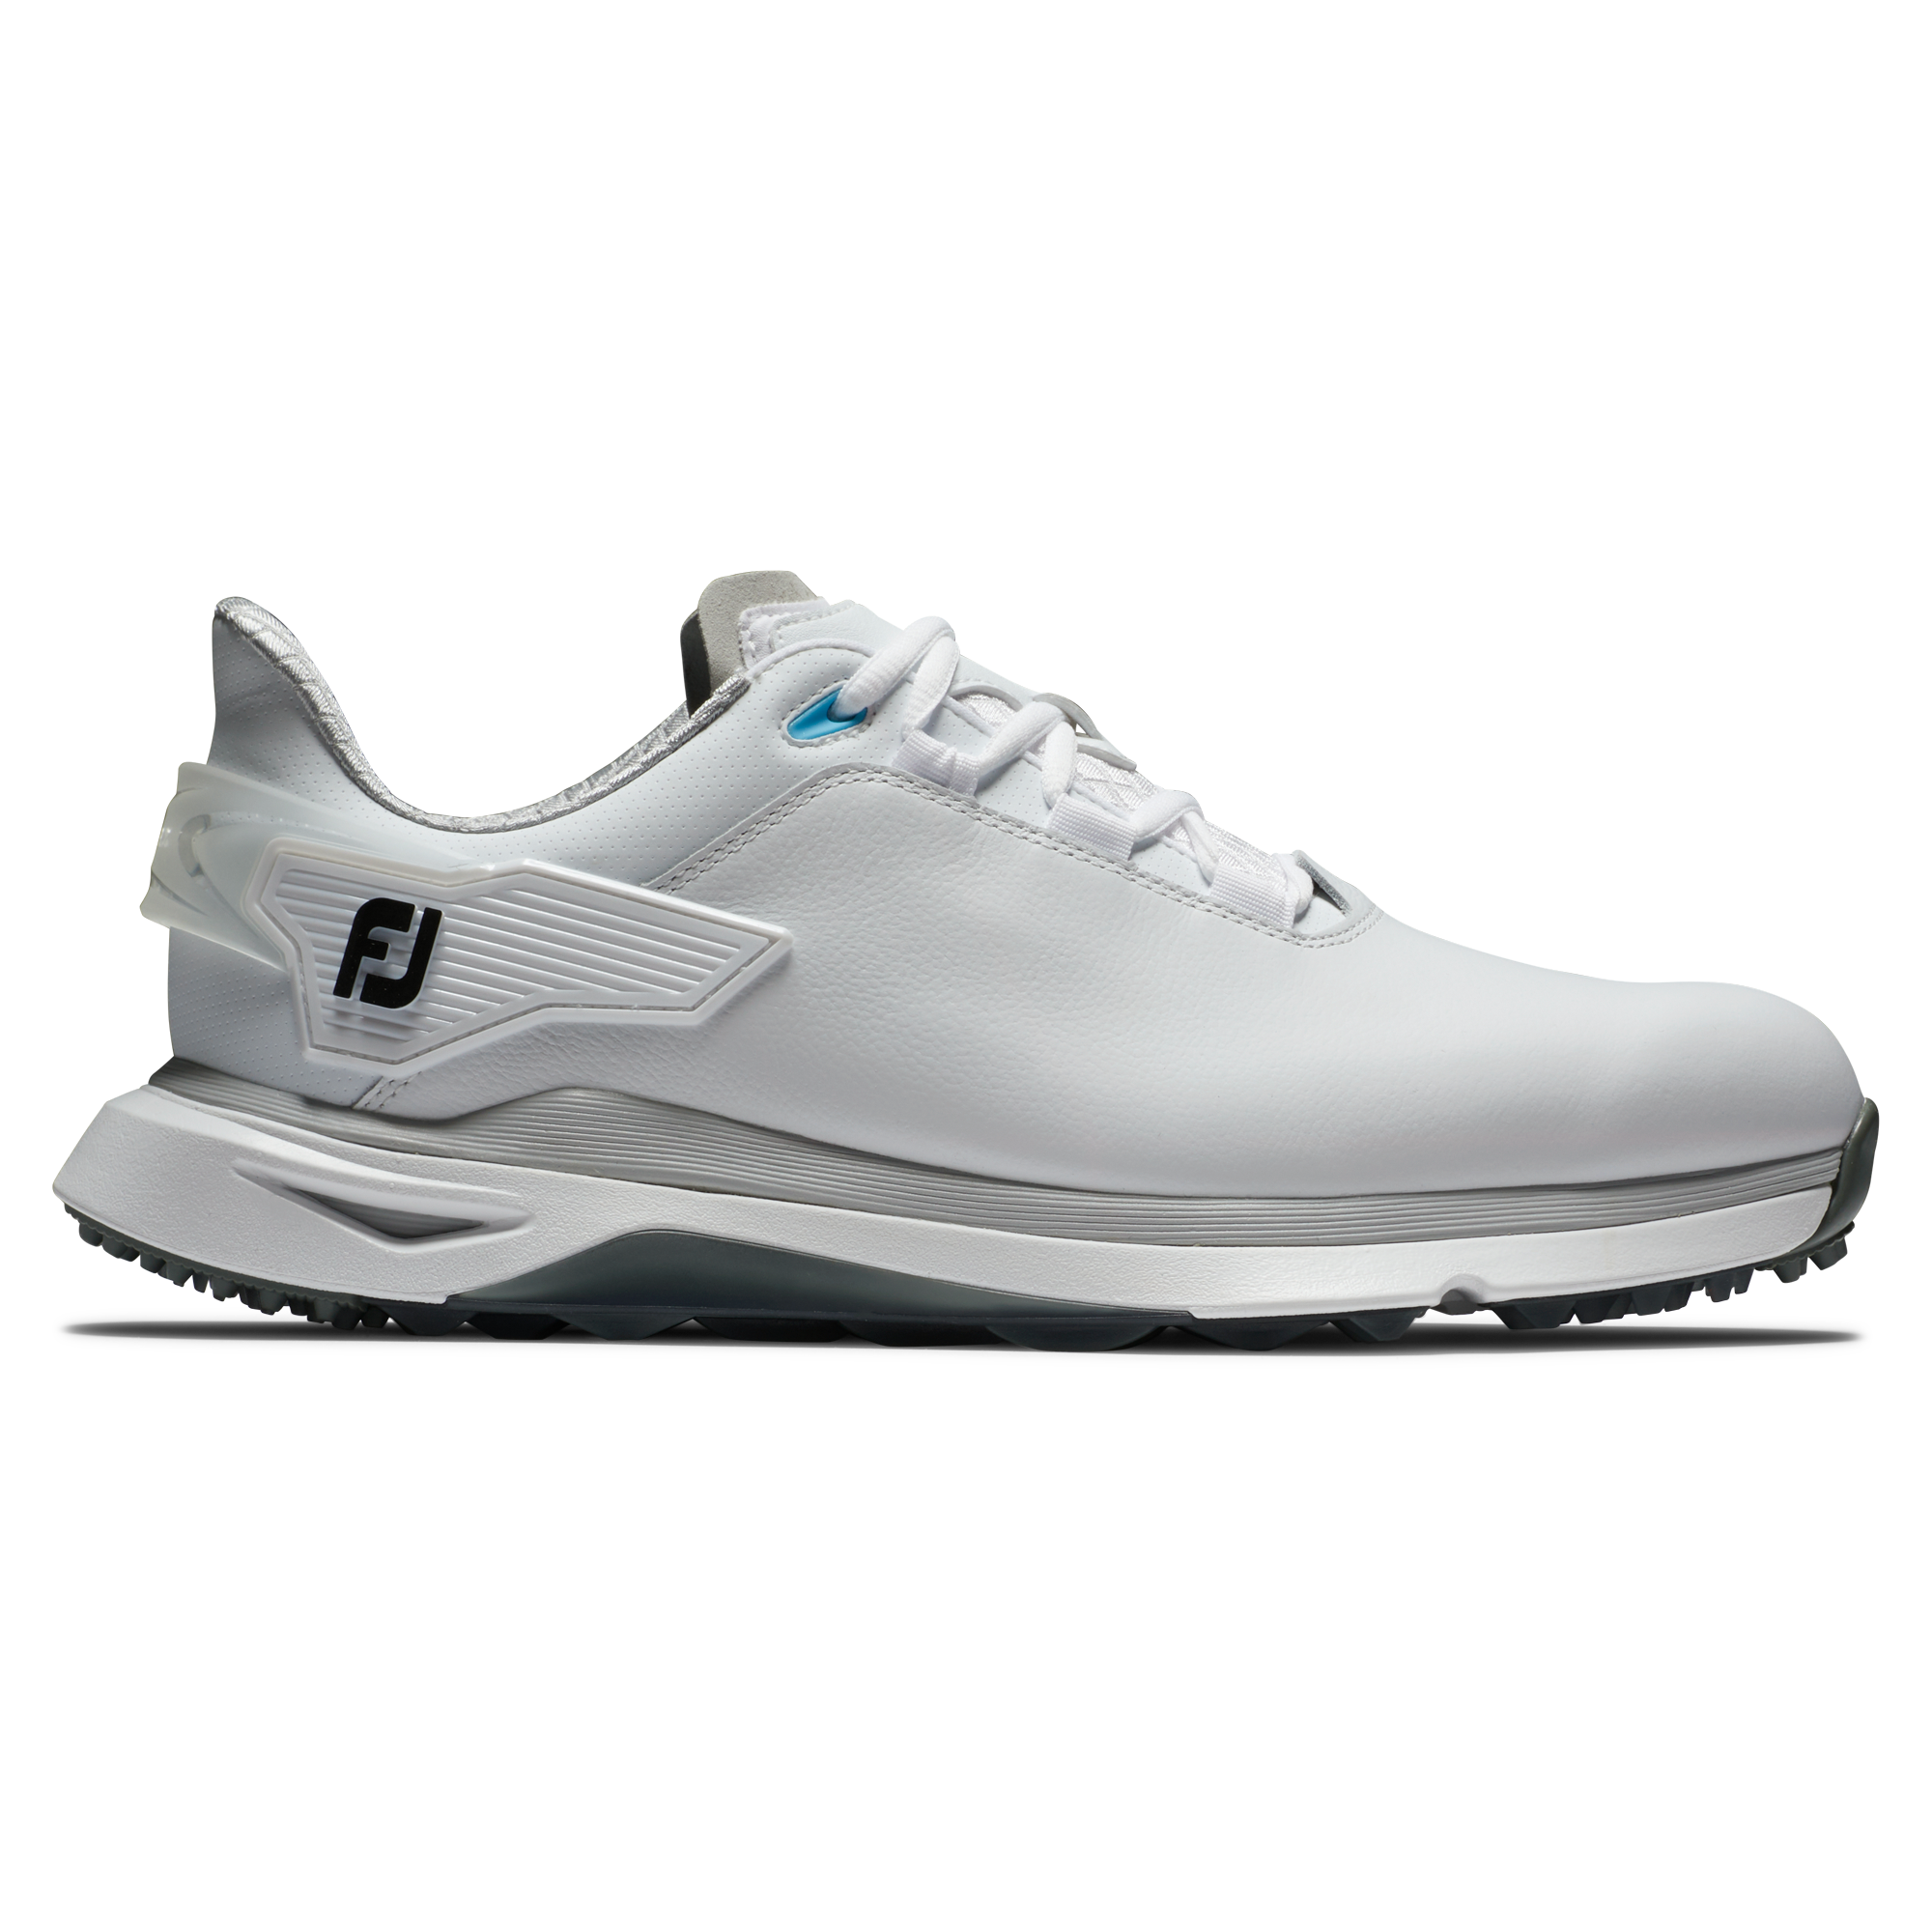 FootJoy Pro/SLX Wide pánské golfové boty, bílé/šedé, vel. 8 UK